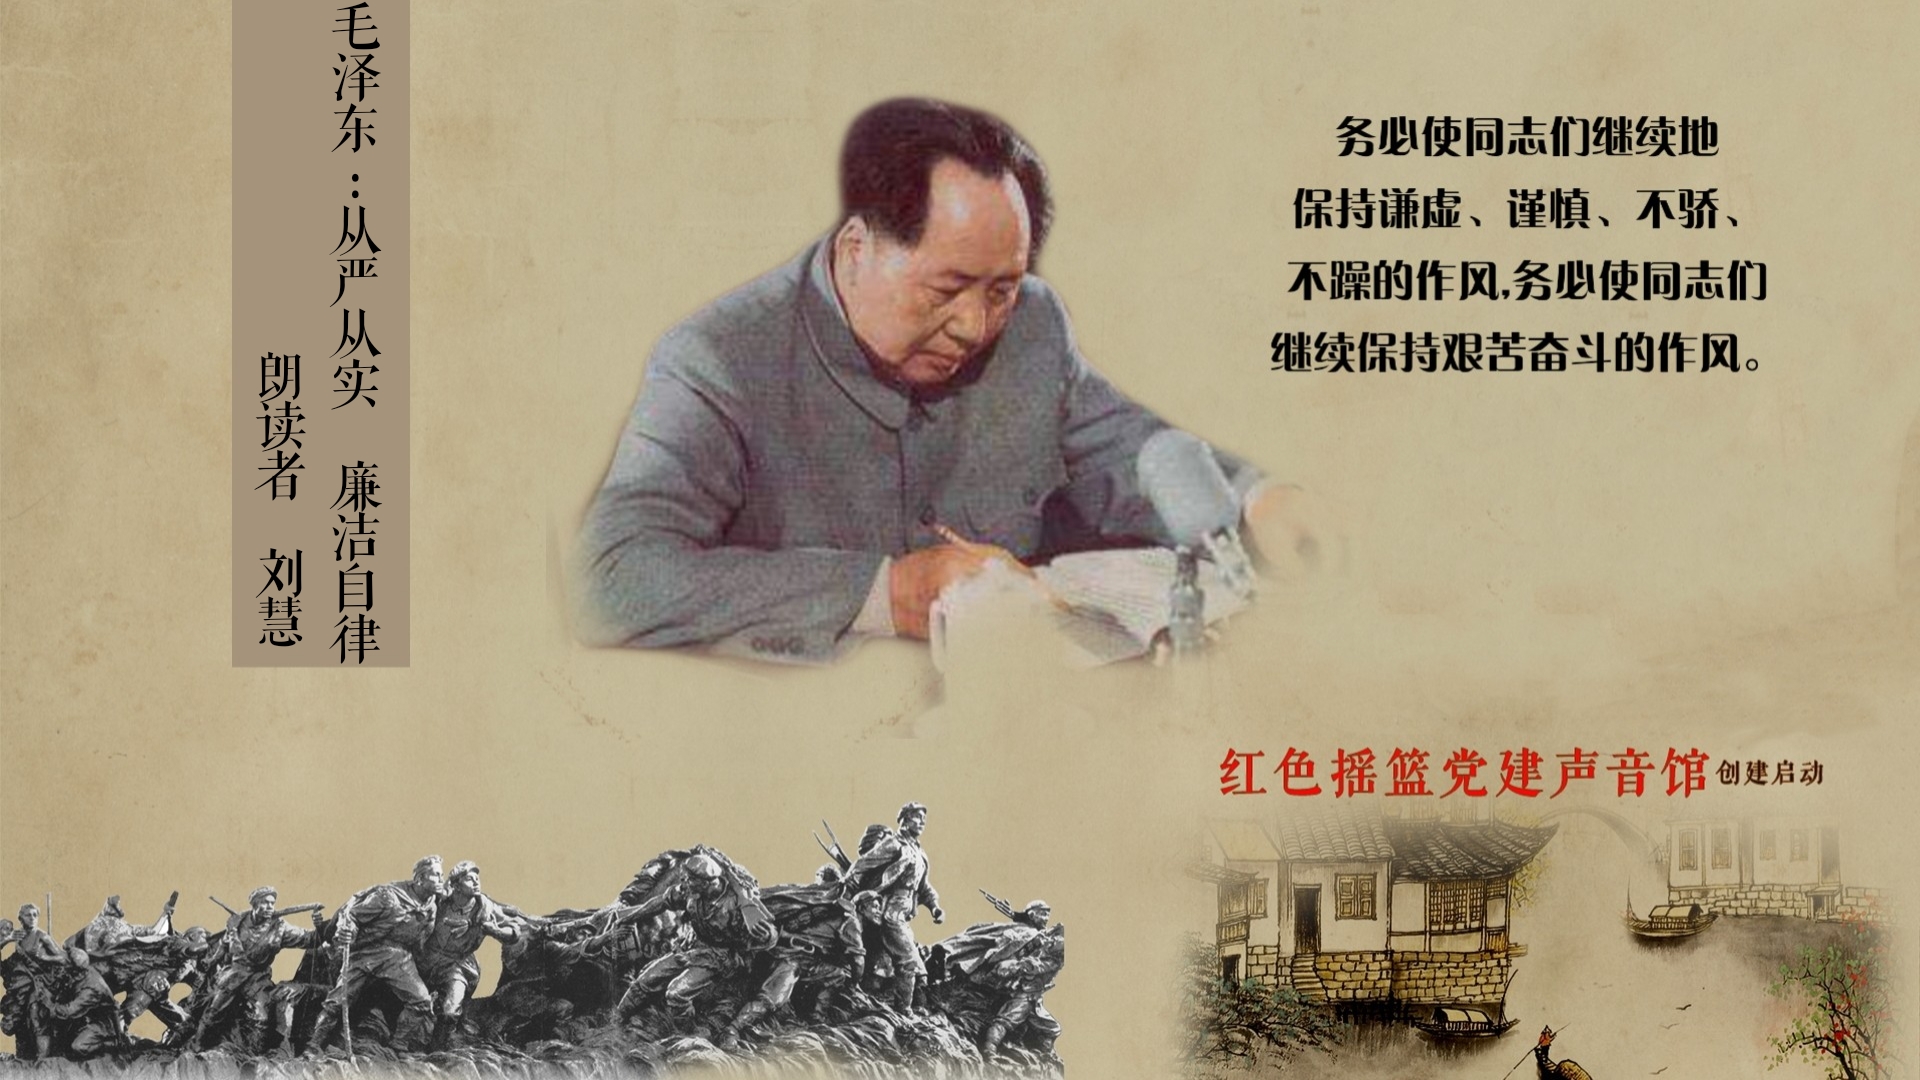 1966年8月18日毛泽东在天安门城楼上第一次检阅红卫兵，向游行队伍挥手致意_吕相友_BB画廊_画廊主页_雅昌艺术网